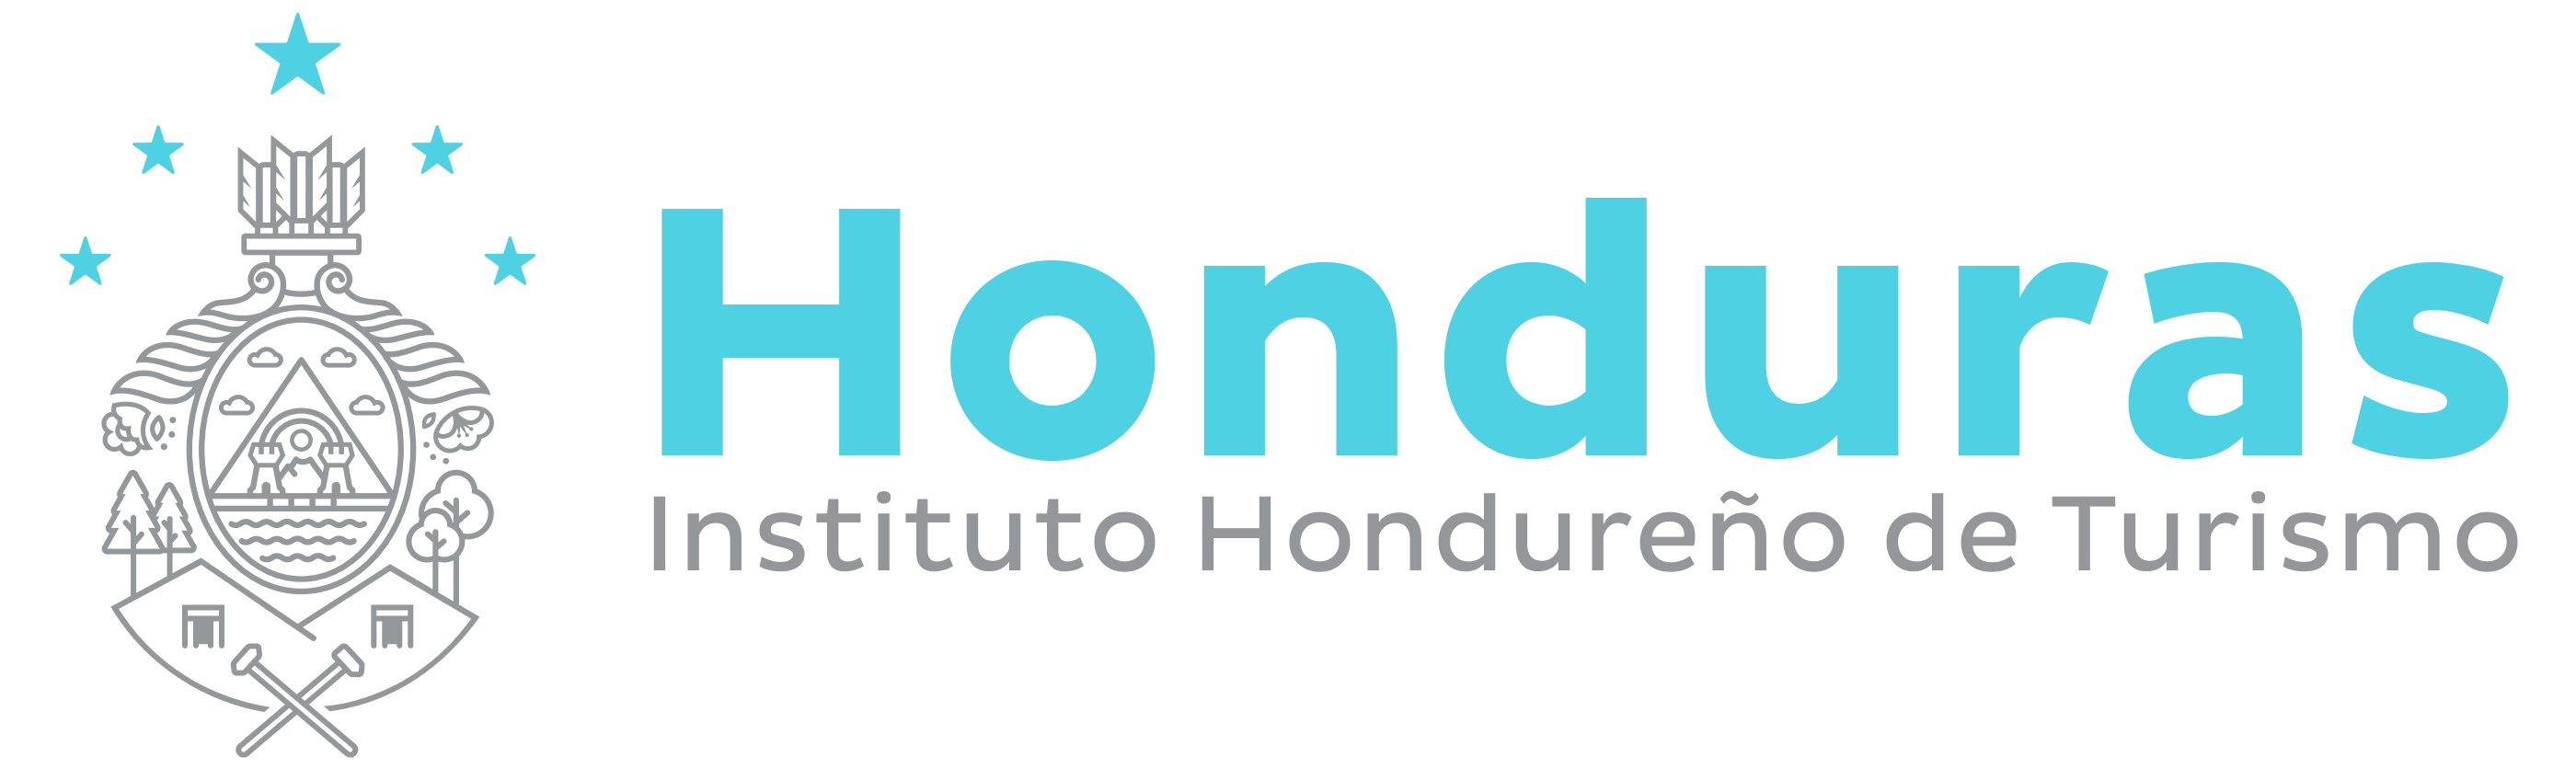 Instituto Hondureño de Turismo